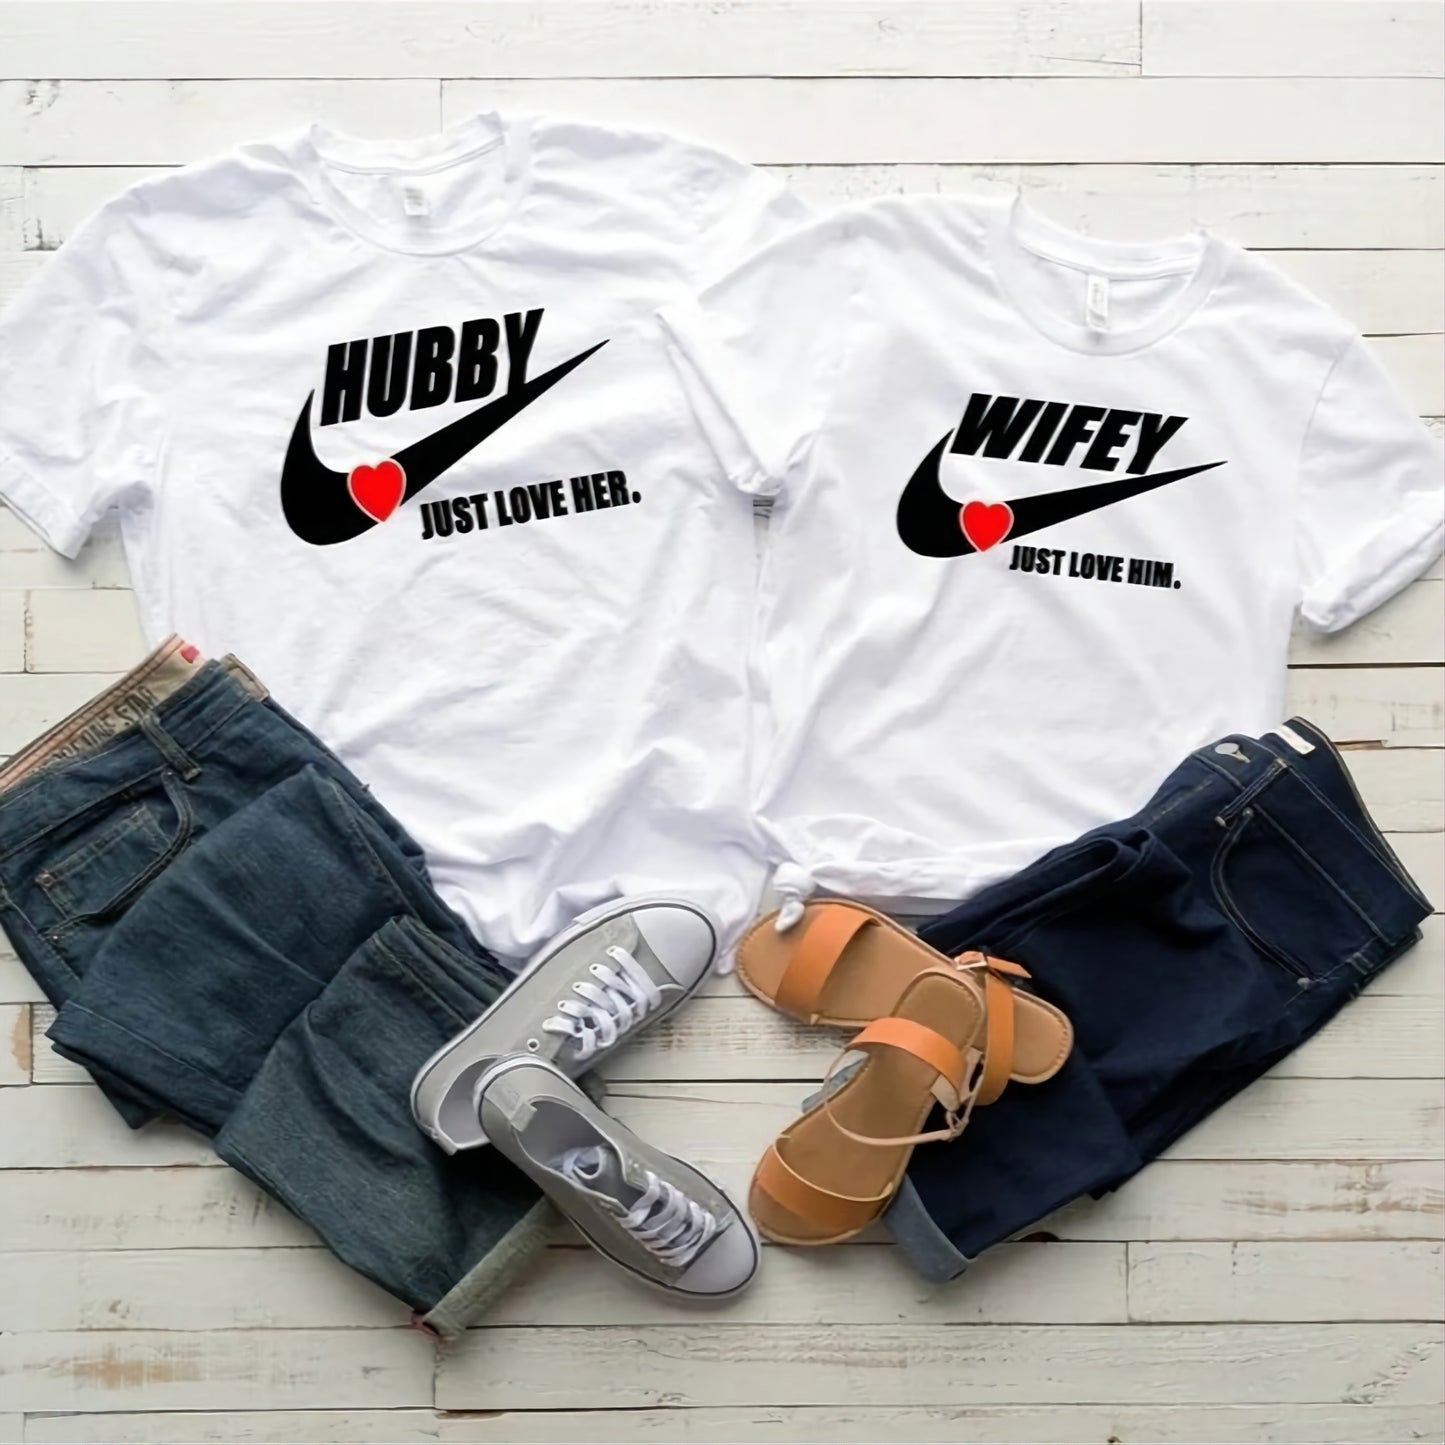 Hubby & Wifey T-Shirts